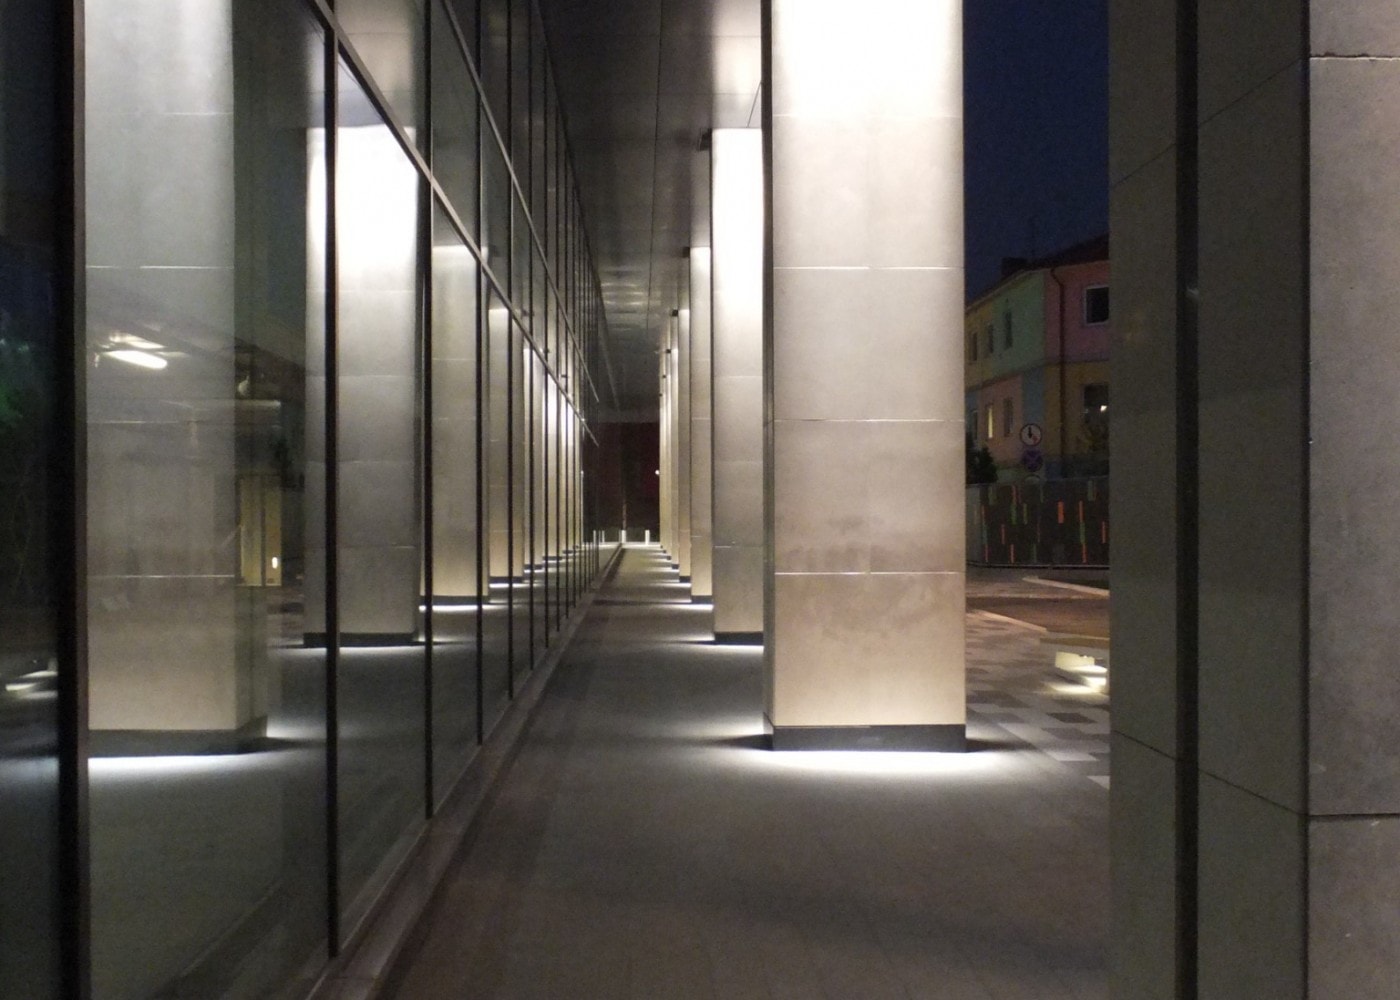 commercial lighting design: exterior walkway